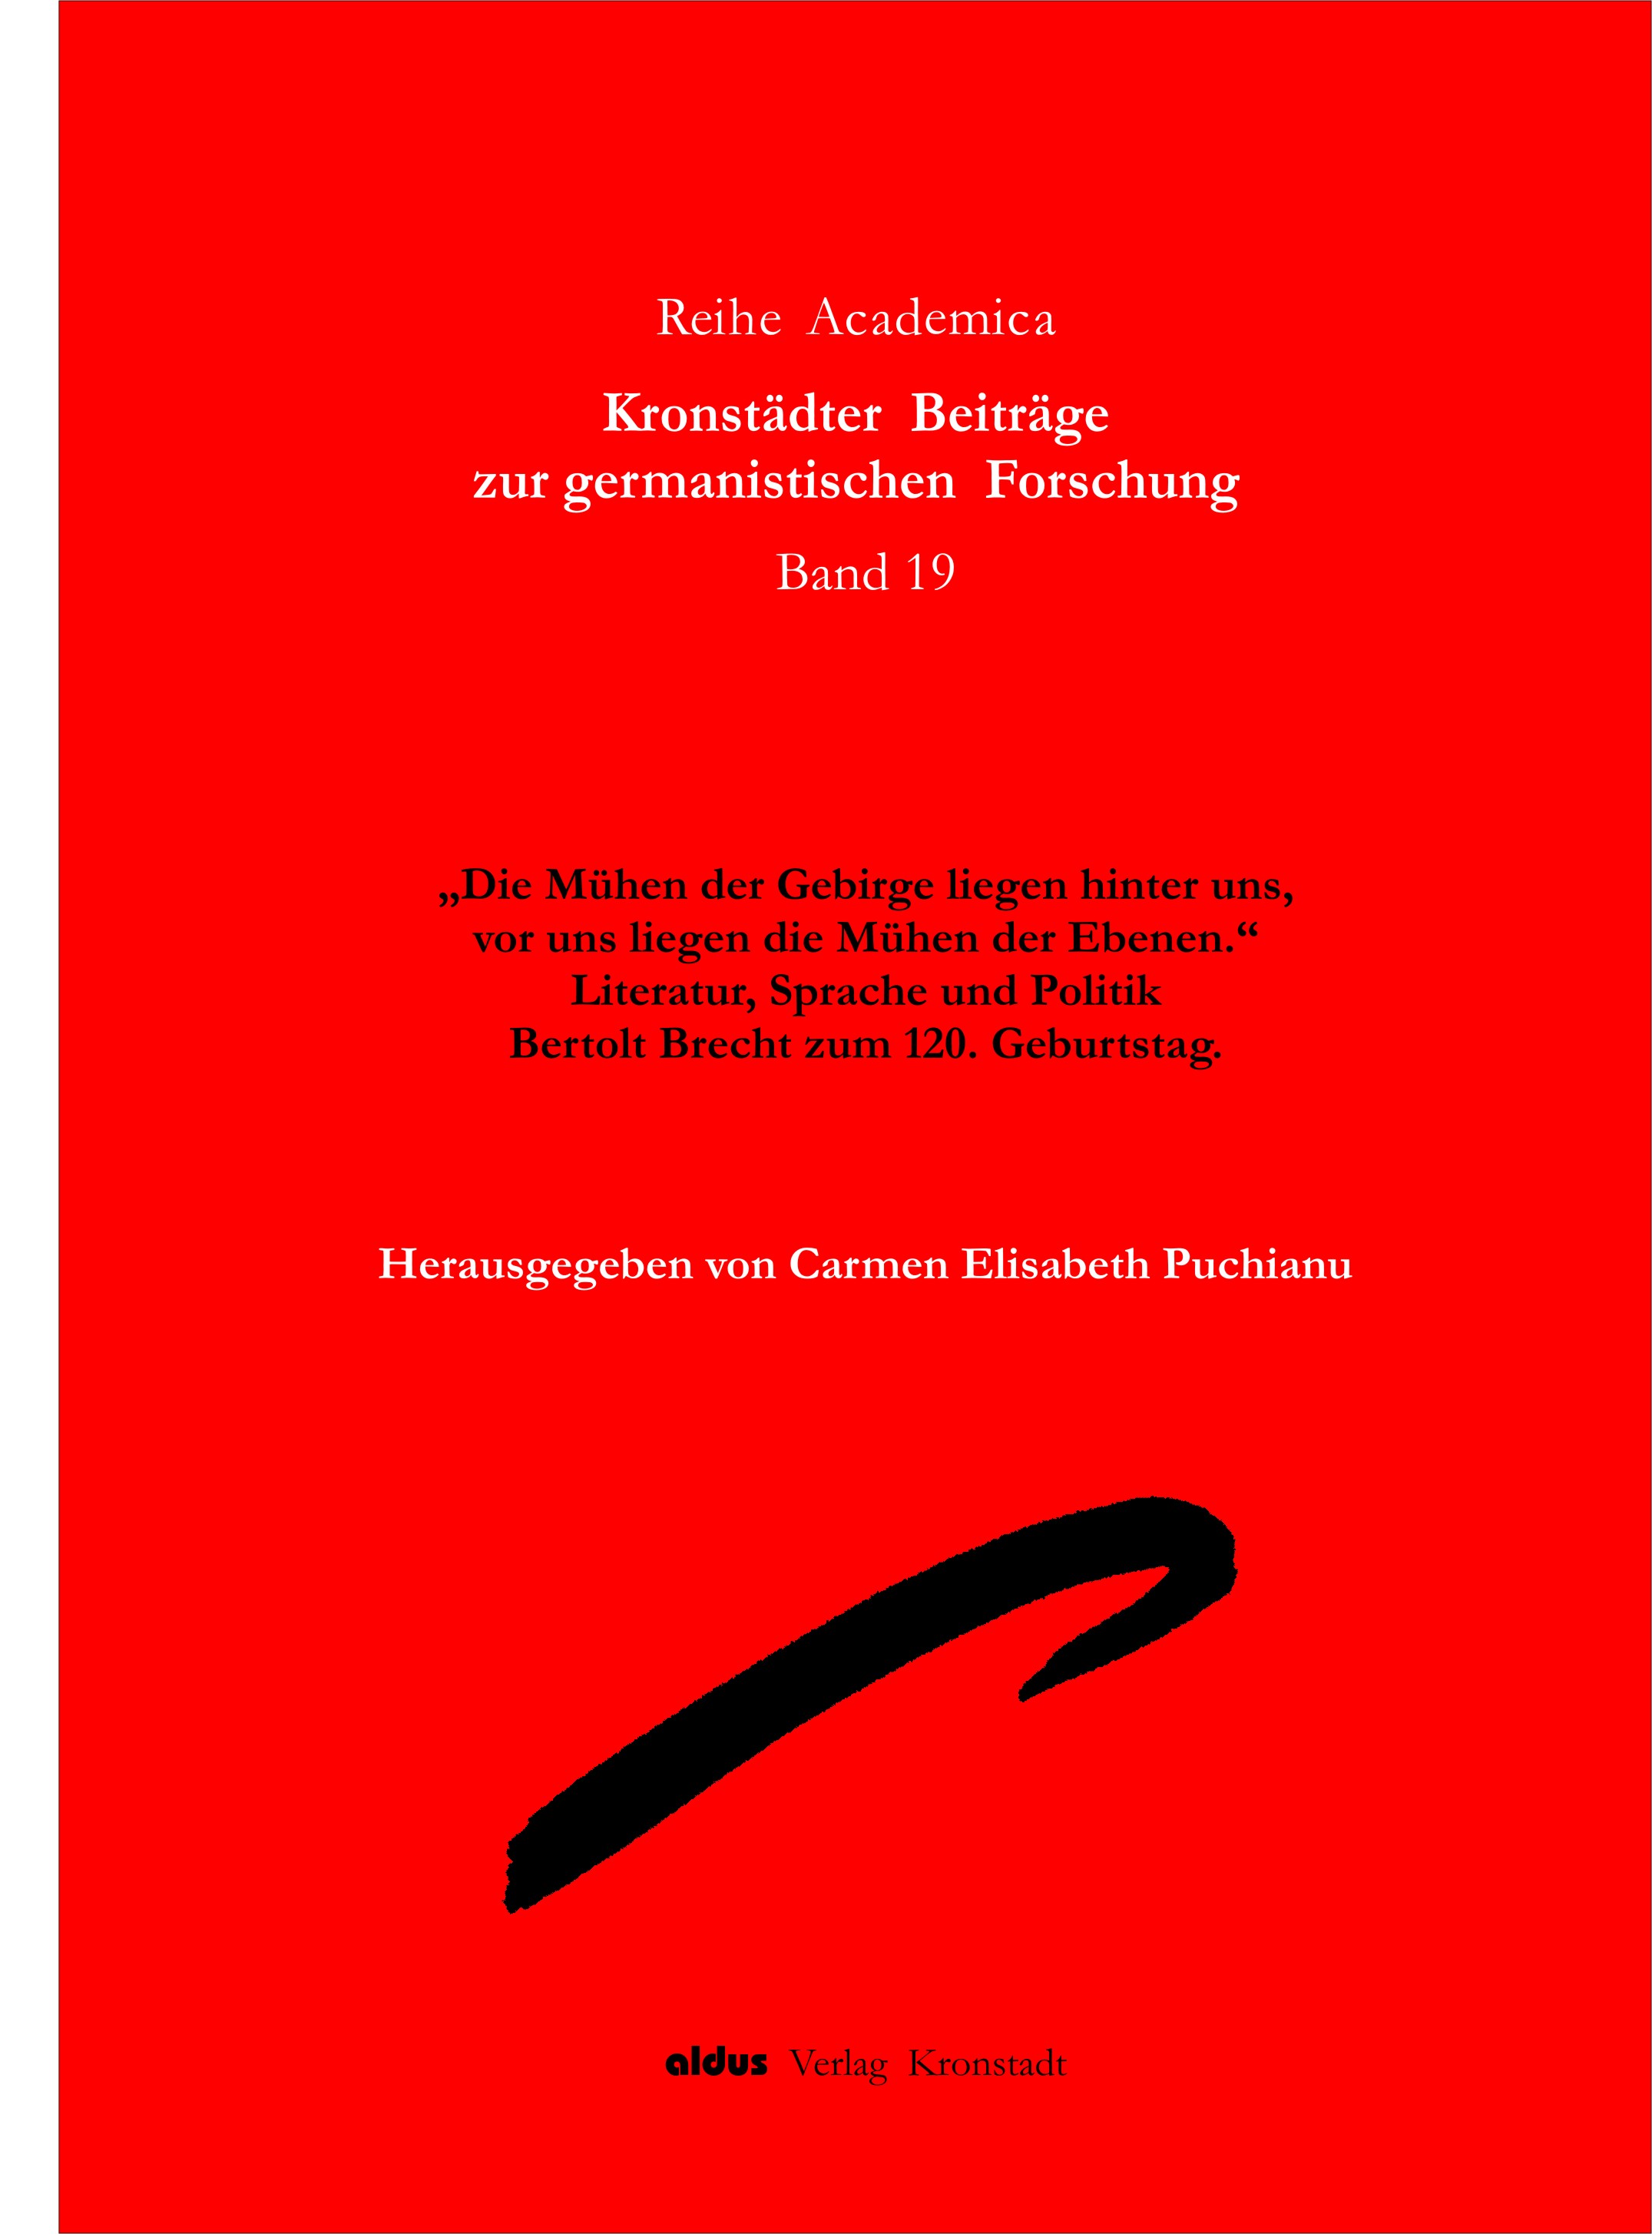 BRASOV YEARBOOK OF GERMAN STUDIES Cover Image